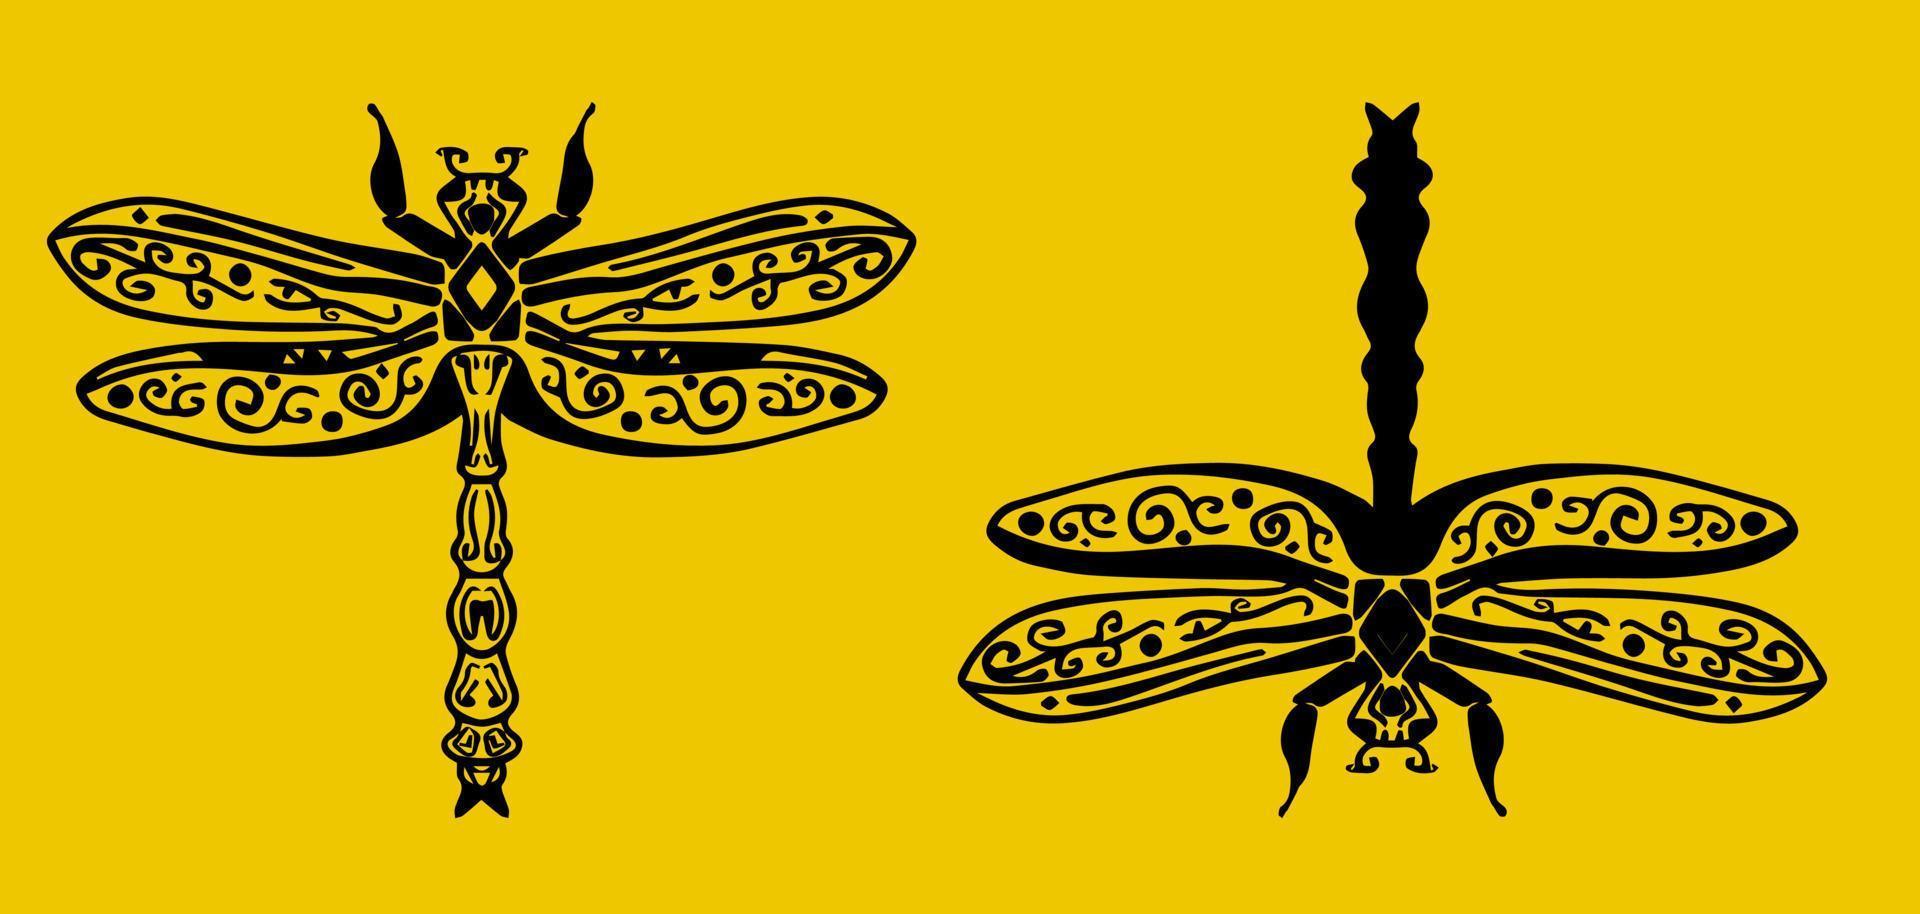 libellule de graphiques d'insectes vectoriels. conception minimale de modèle de logo dessiné à la main. vecteur